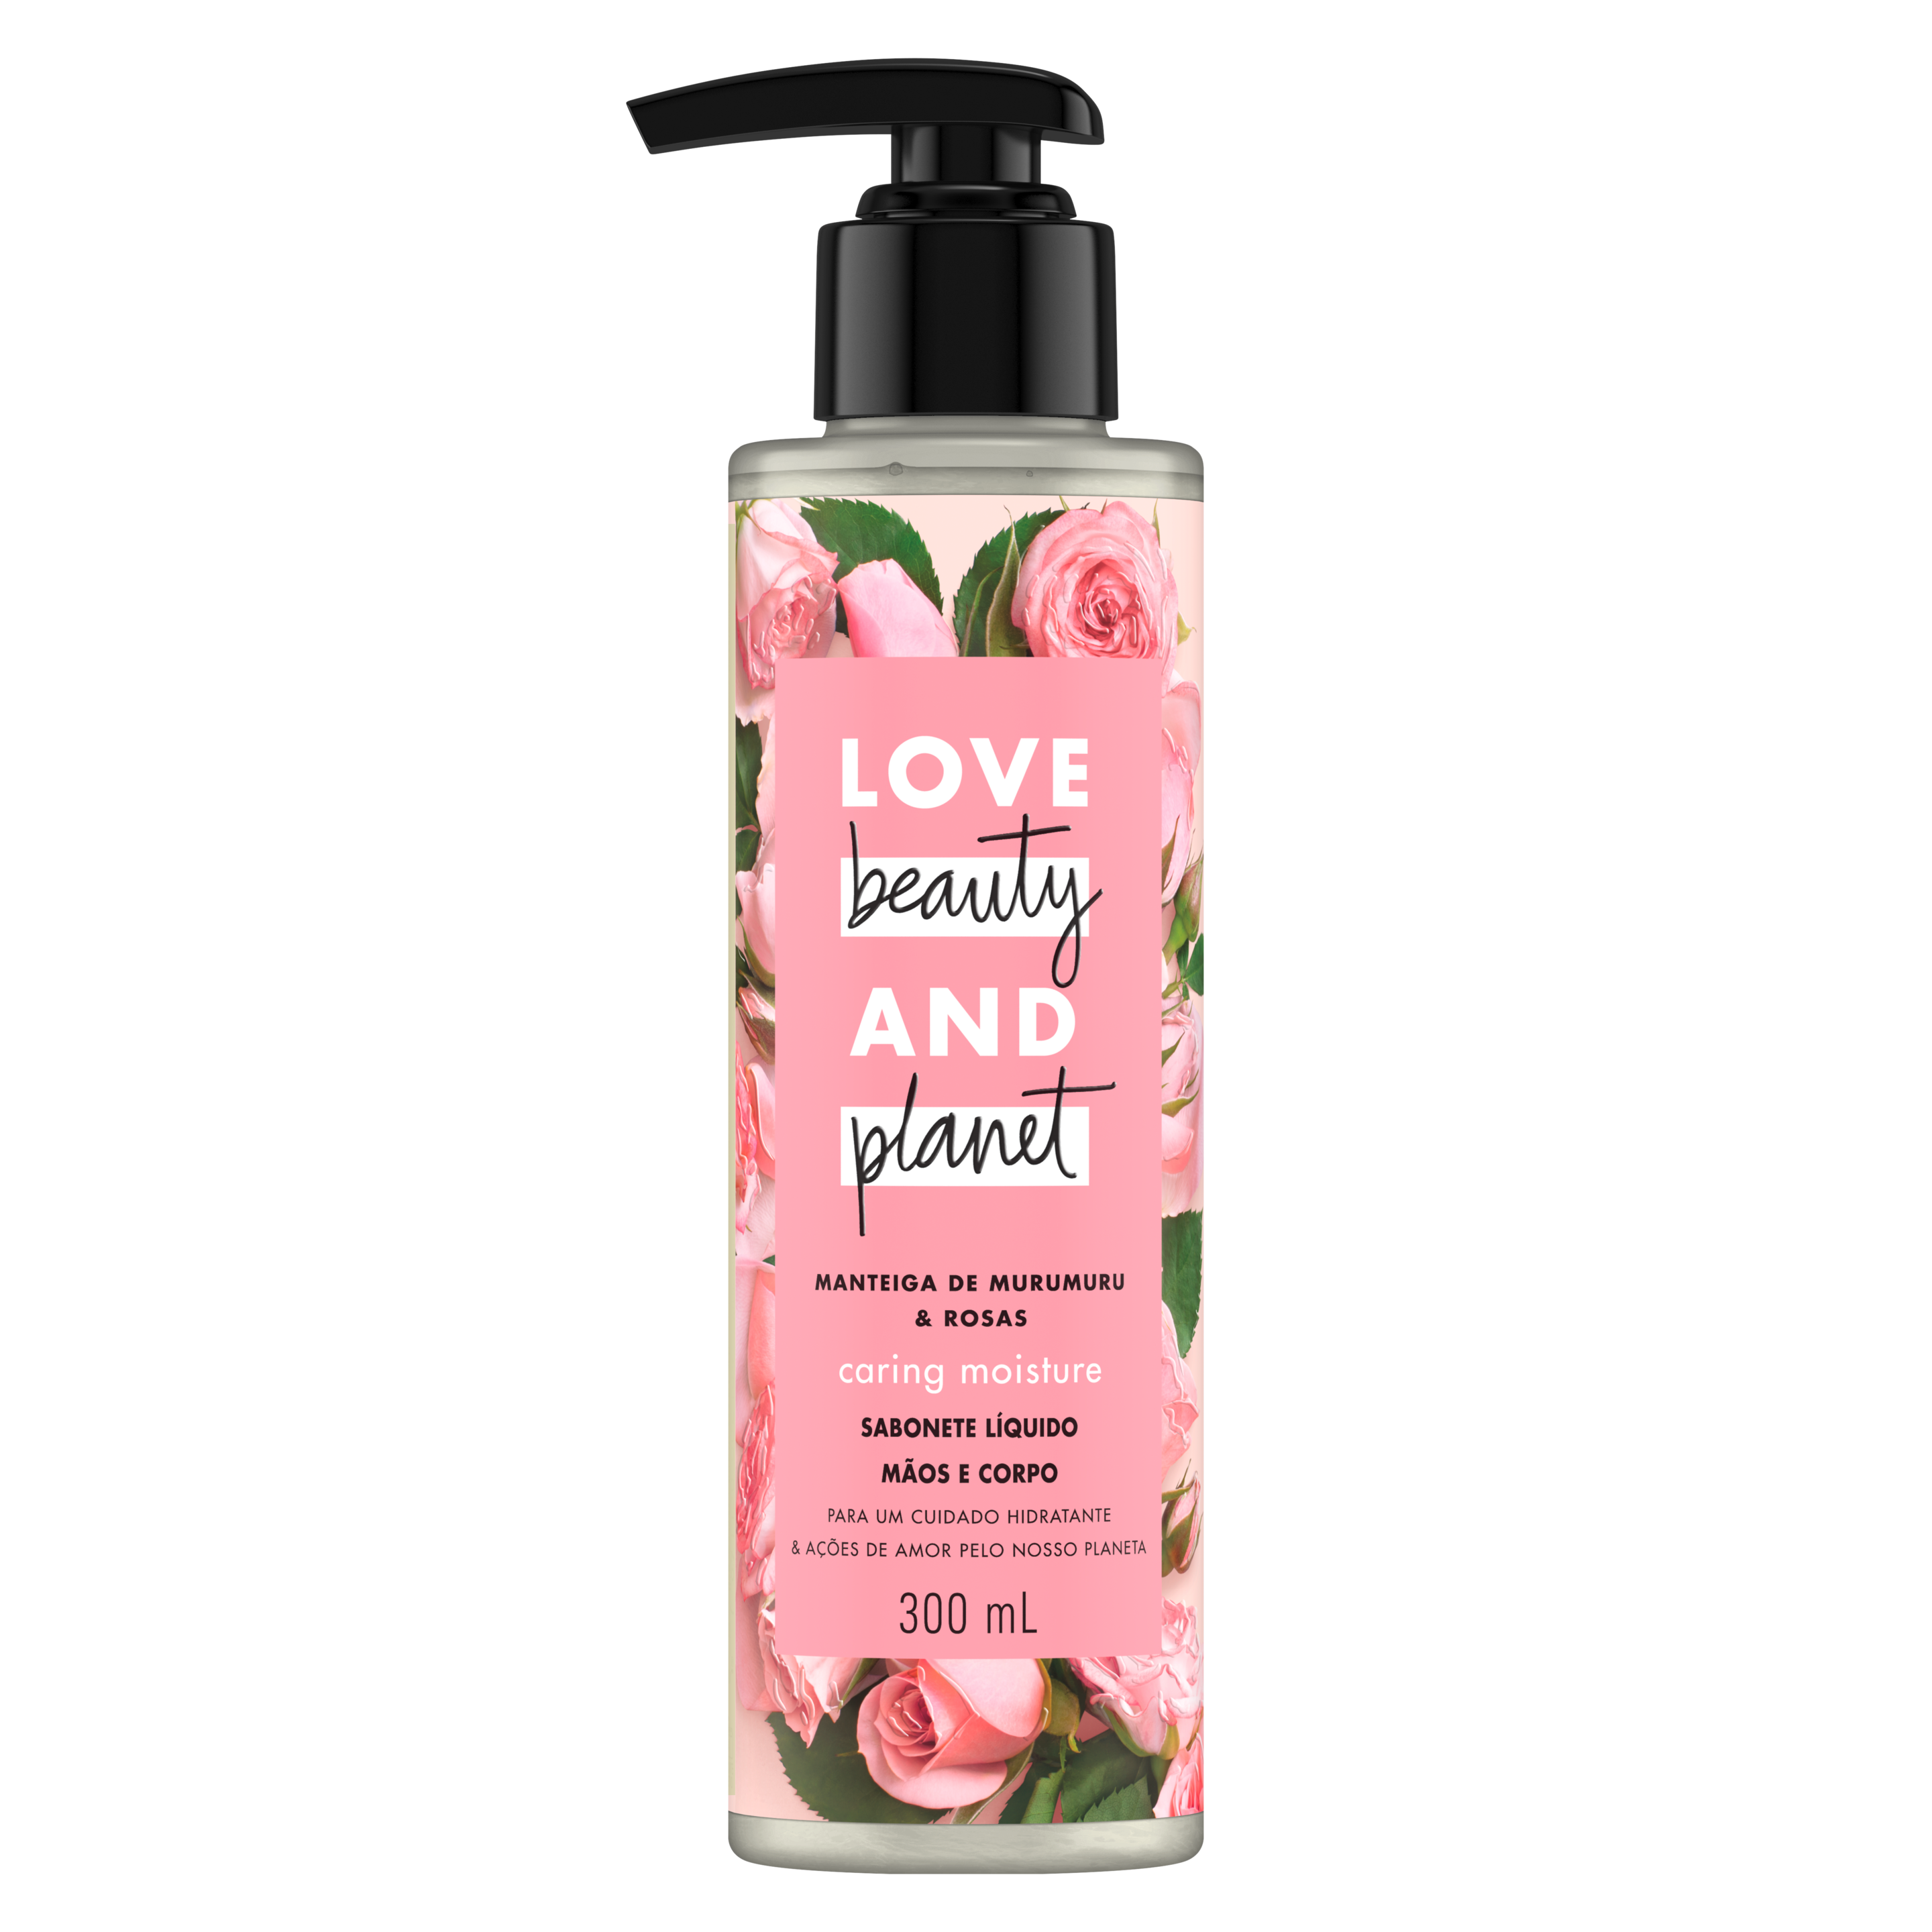 Frente da embalagem do sabonete líquido para o corpo e mãos Love Beauty and Planet manteiga de murumuru & rosas 300 ml